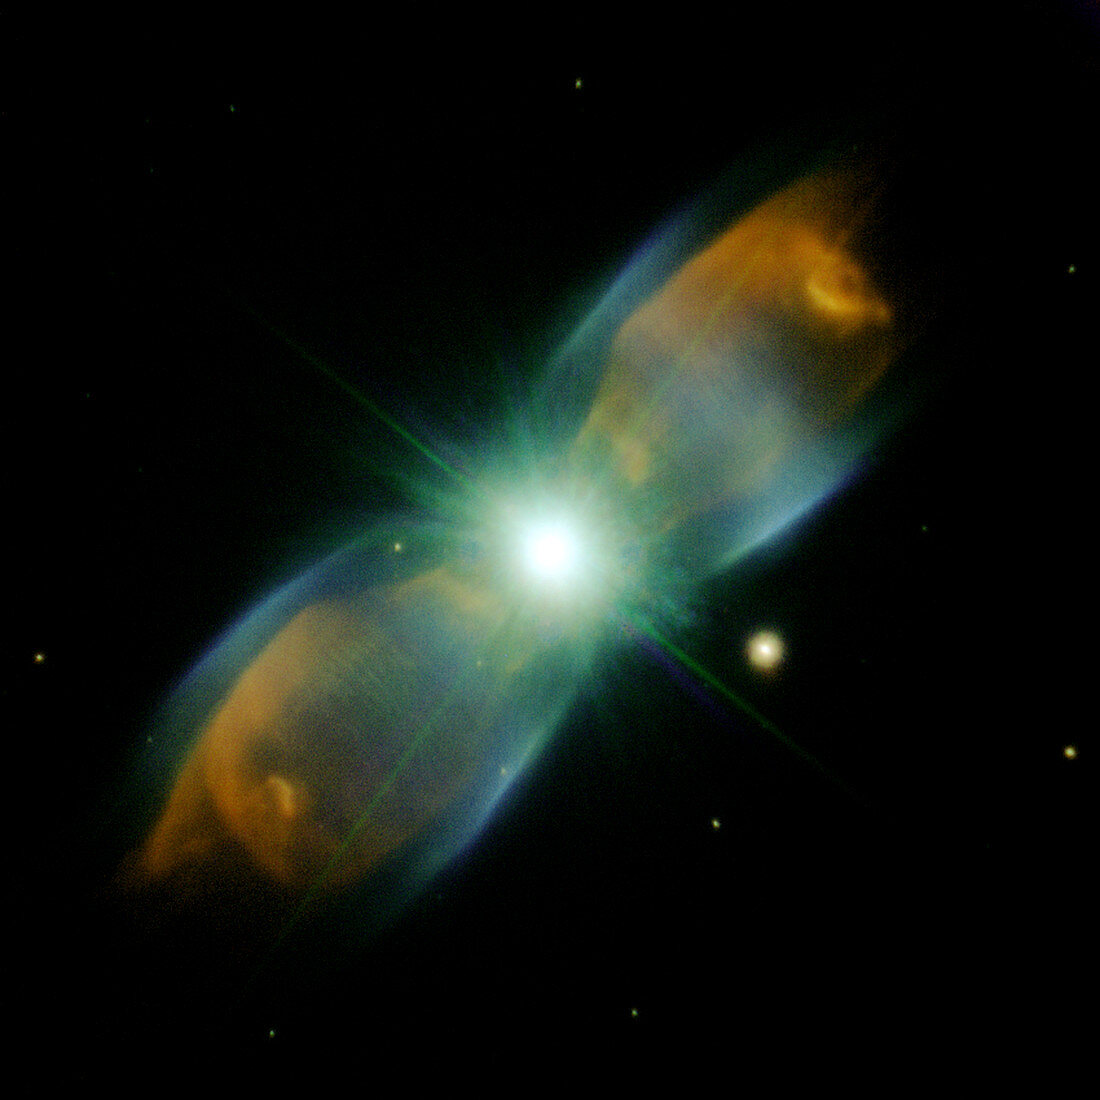 Planetary nebula M2-9